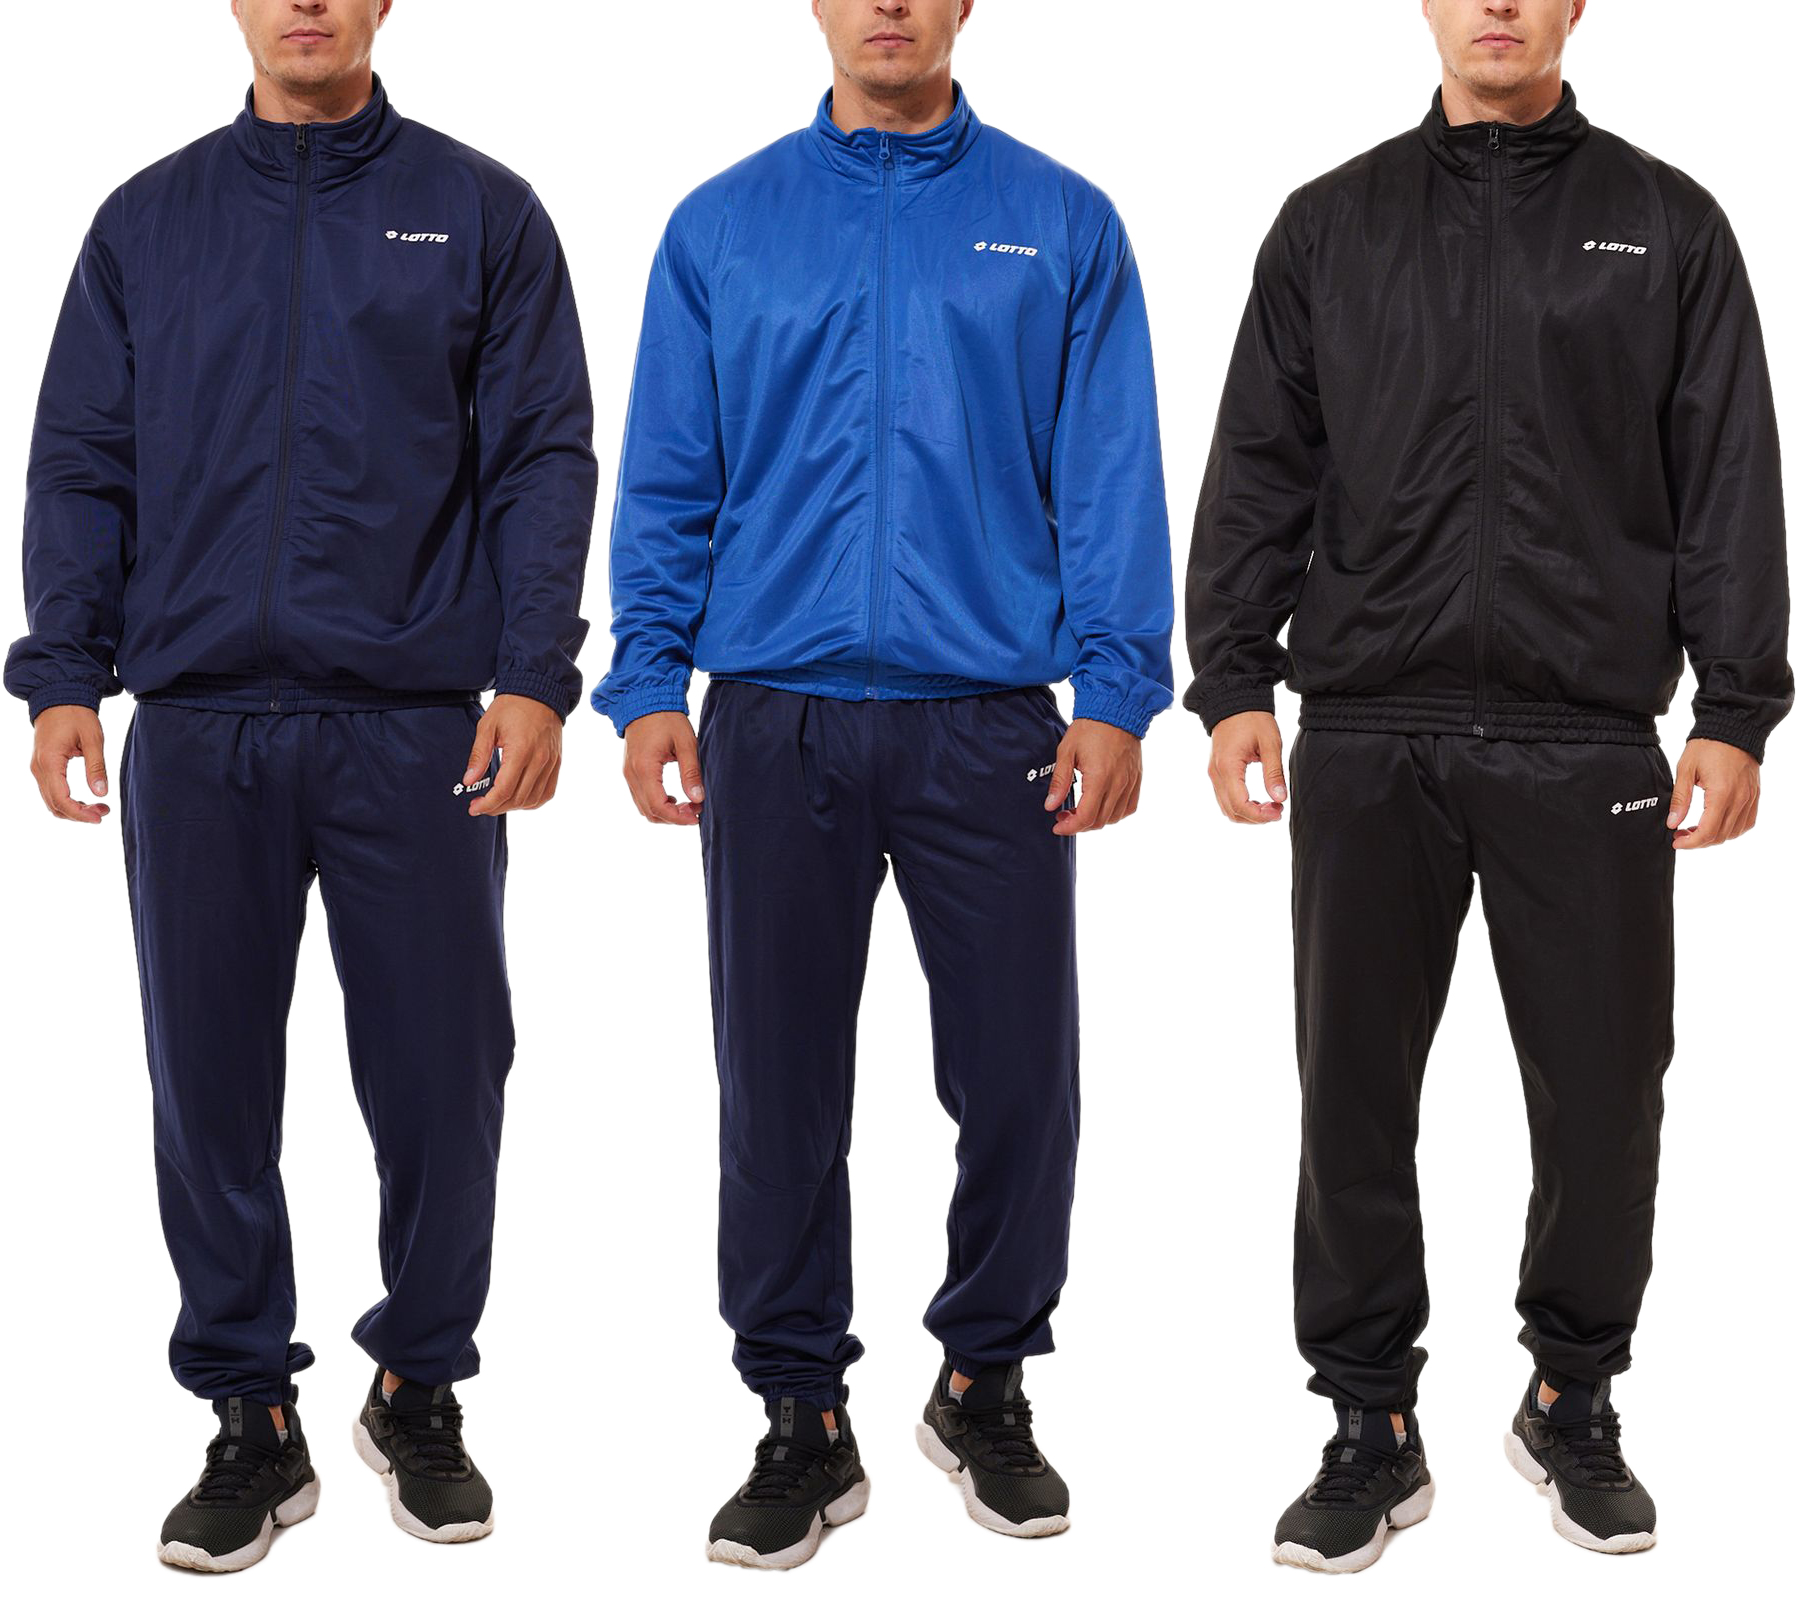 LOTTO Herren Trainings-Anzug 2-teiliger Fitness-Anzug Jogging-Anzug 8705039 Navy, Schwarz oder Blau/Navy von LOTTO